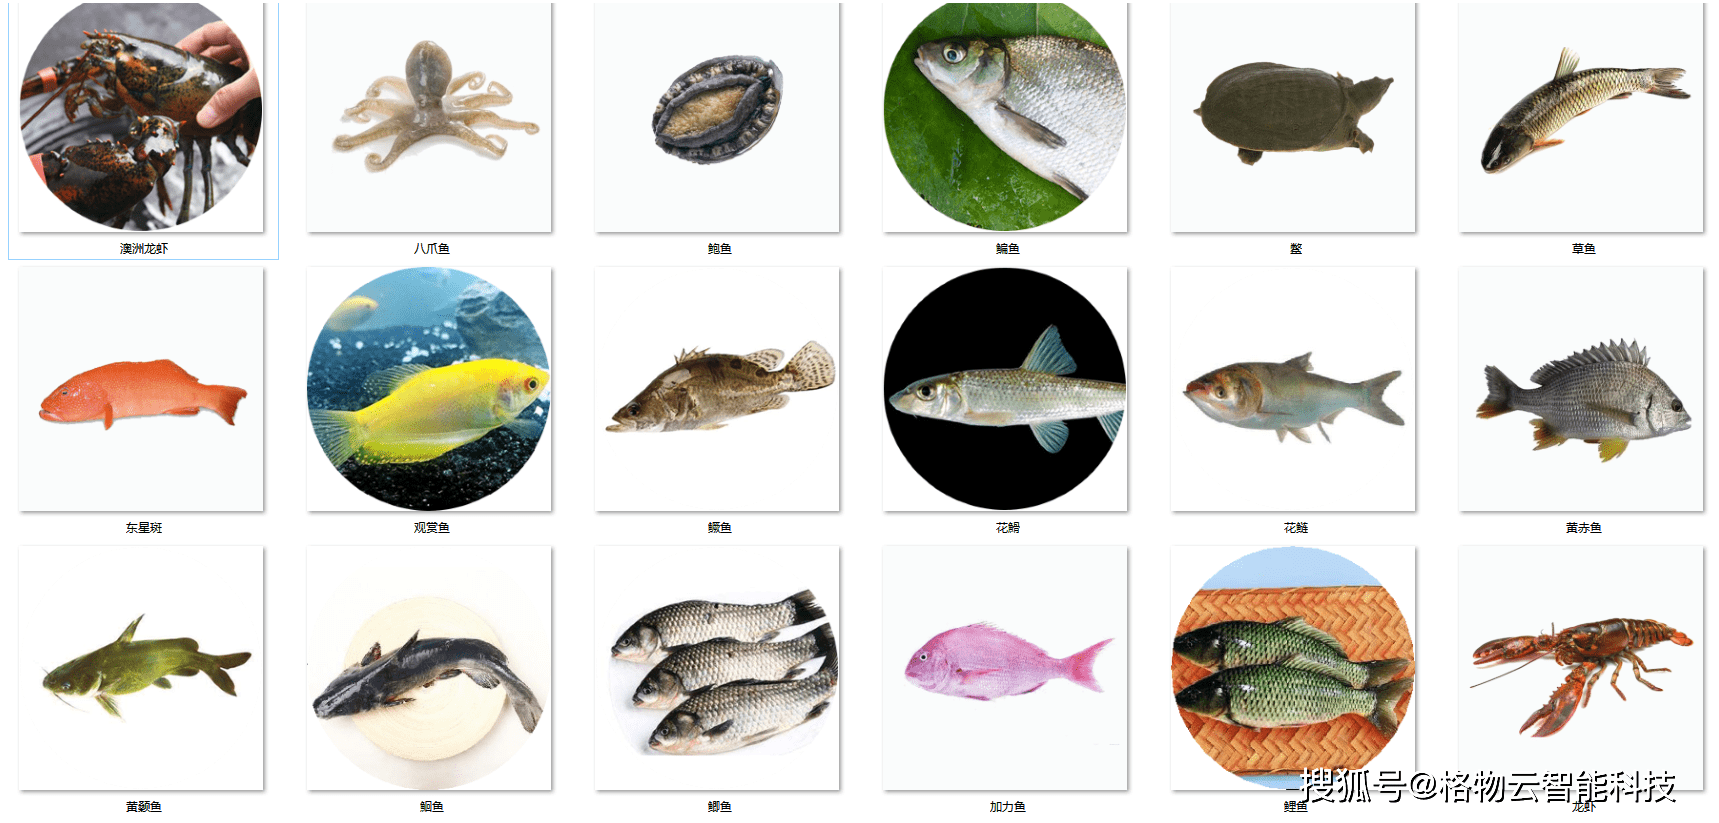 淡水鱼哪种最好养?养殖什么最赚钱?